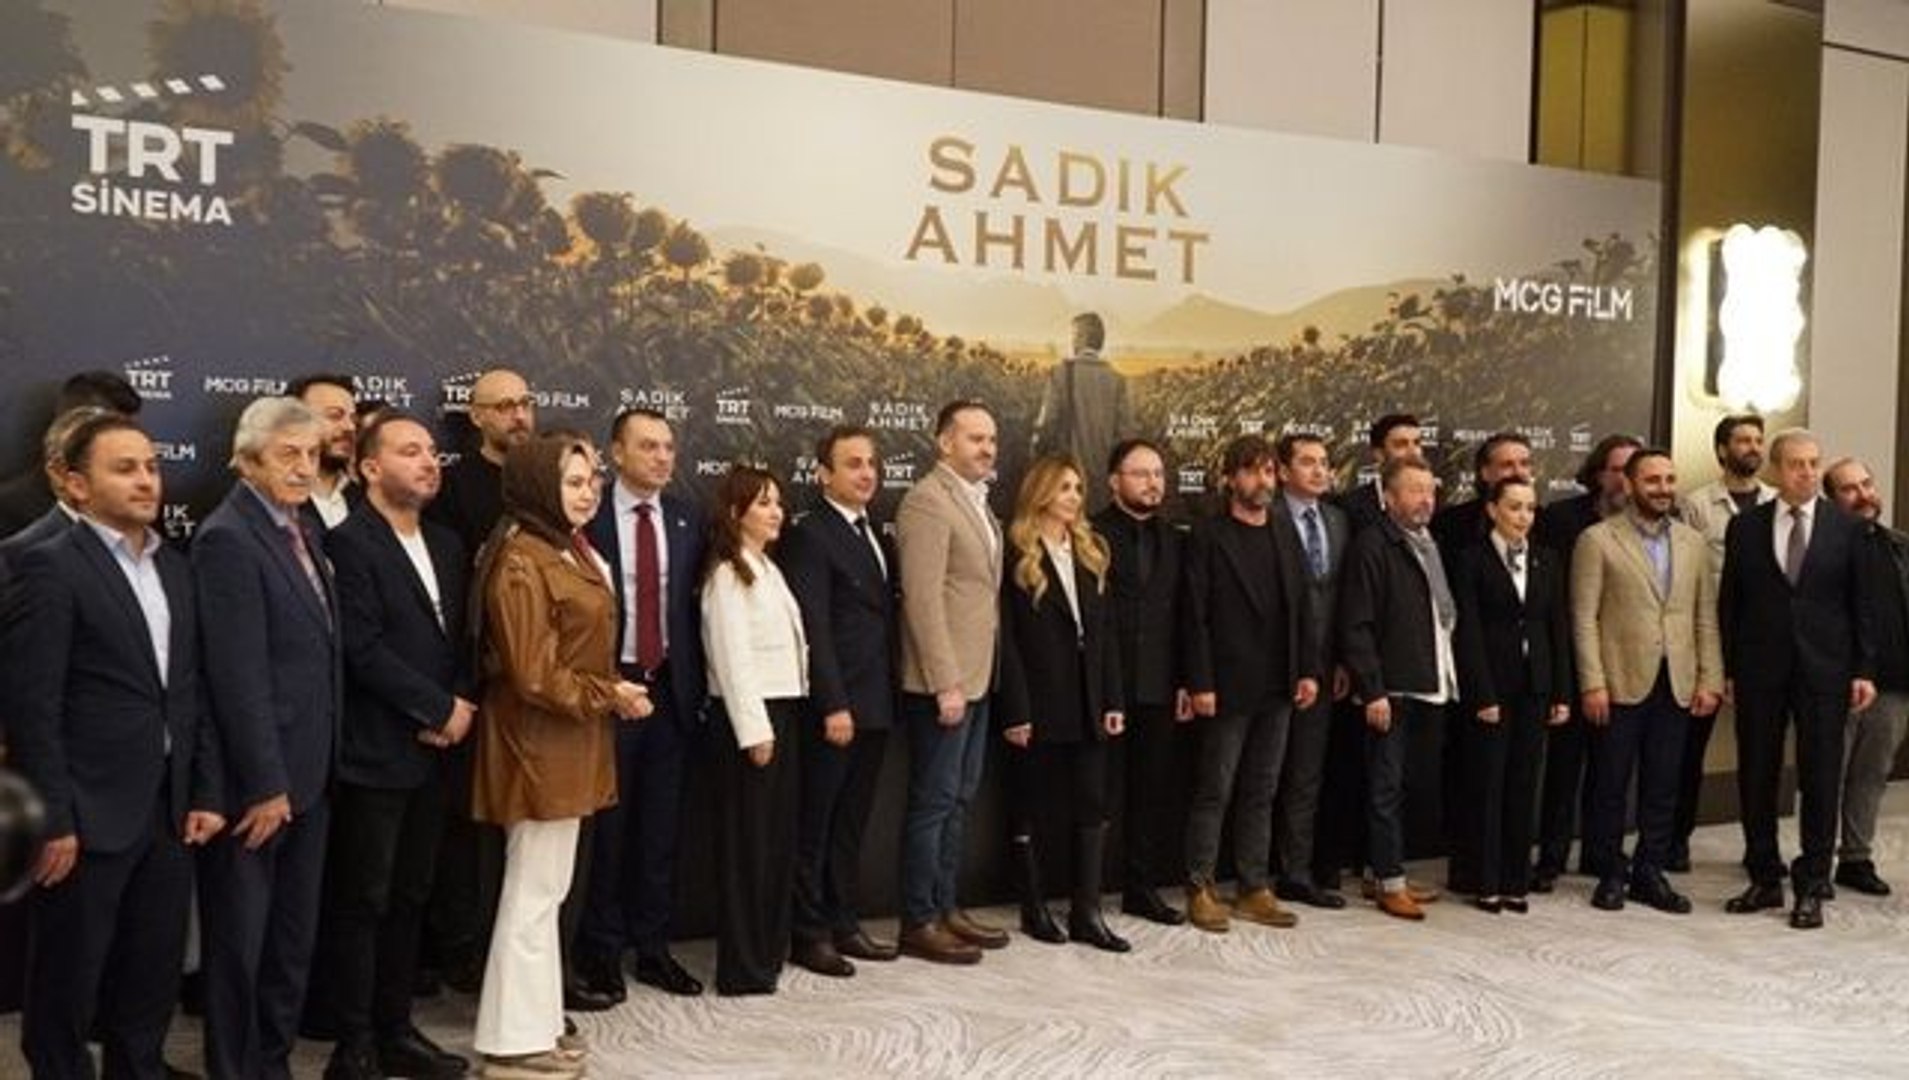 ⁣Batı Trakyalı Müslüman Türklerin savunucusu Dr. Sadık Ahmet'in hayatı film oldu! 29 Aralık'